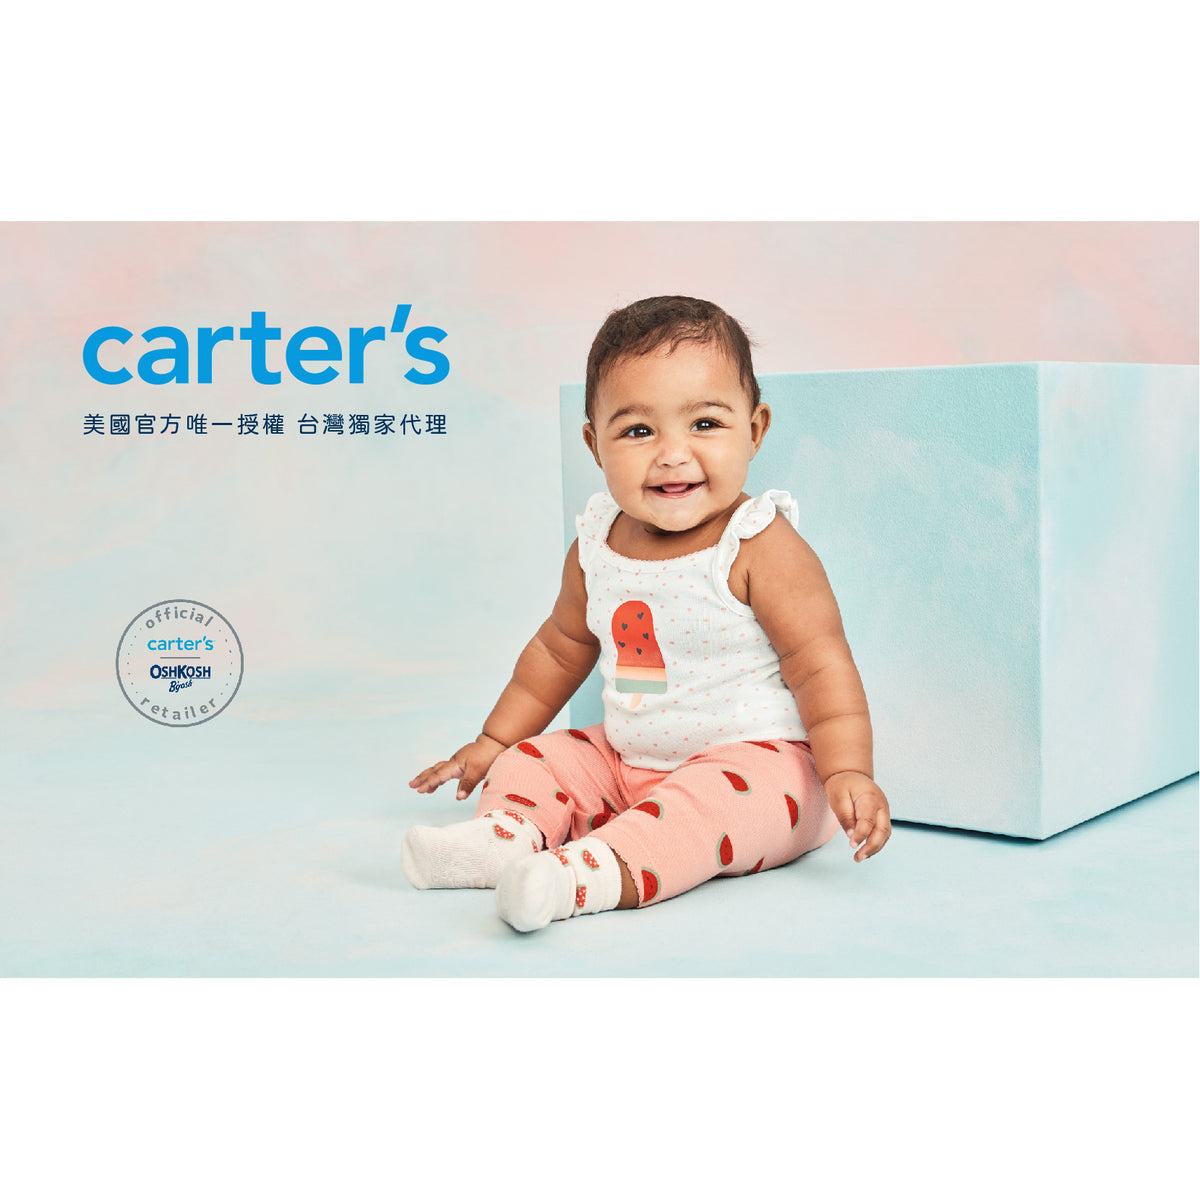 Carter's 氣質粉粉公主2件組套裝(9M-24M)